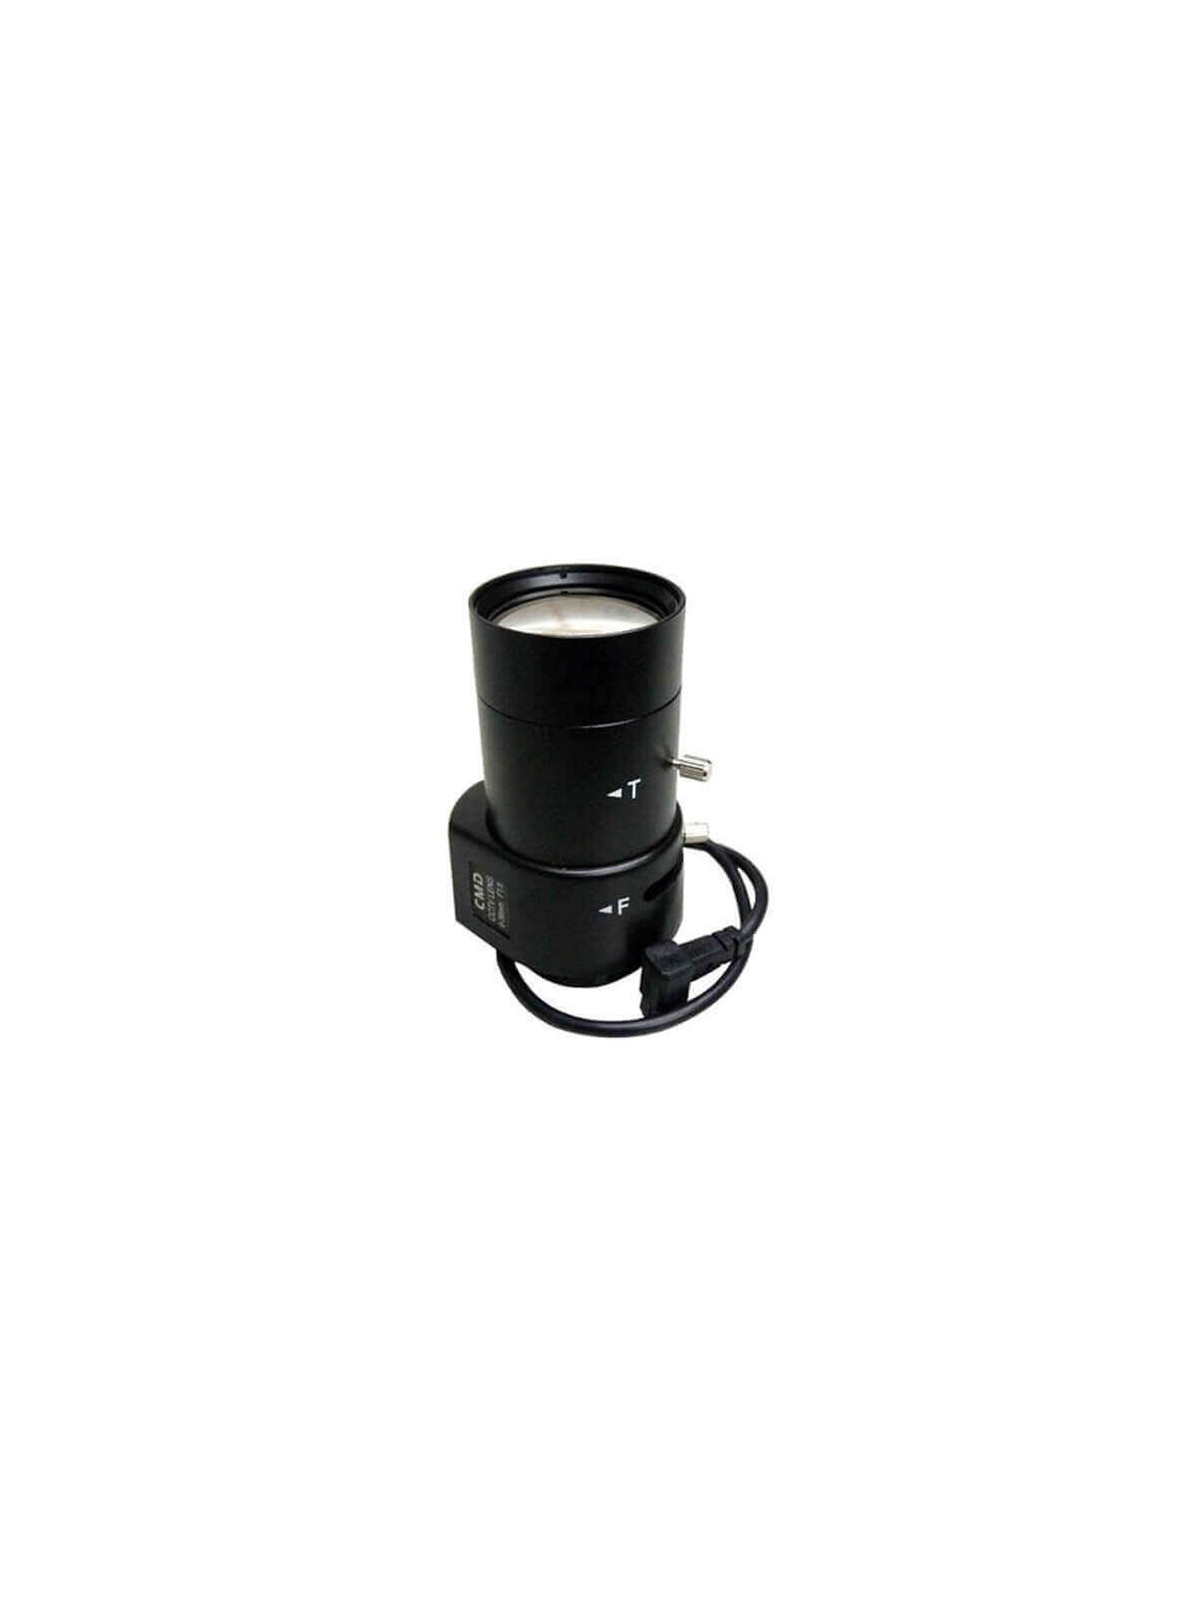 Óptica varifocal auto iris para cámara  6 - 60mm 2MP SSV06060GNB